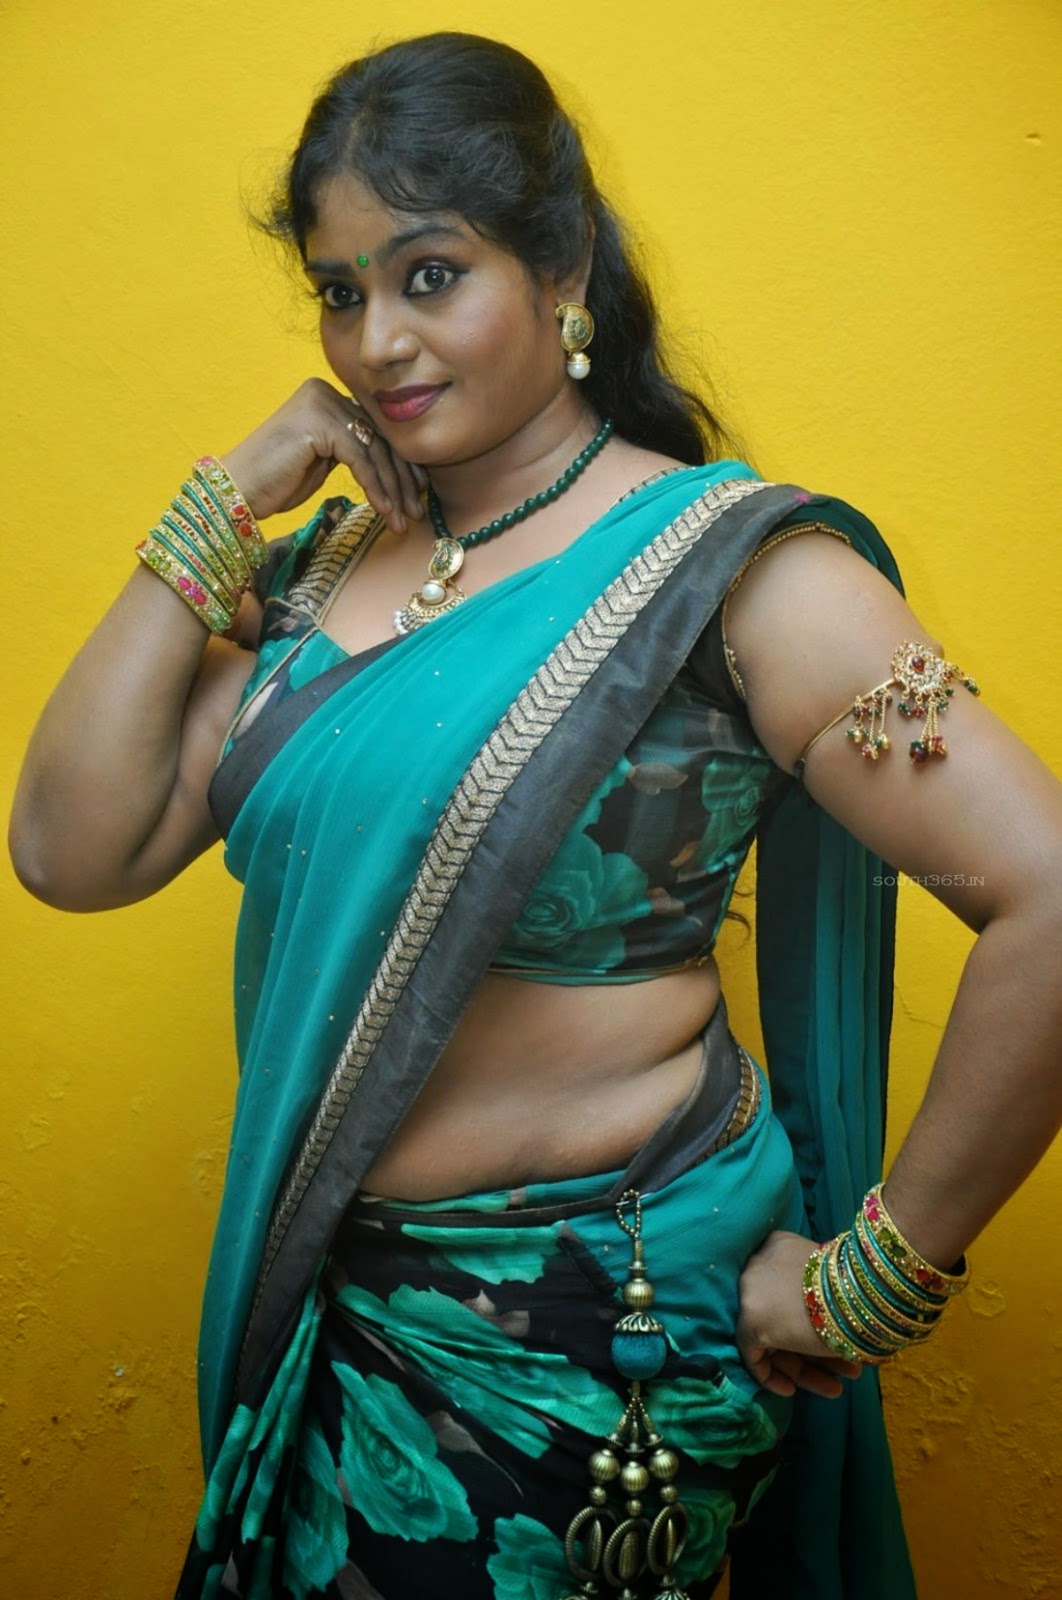 Tamil natural aunty xxx